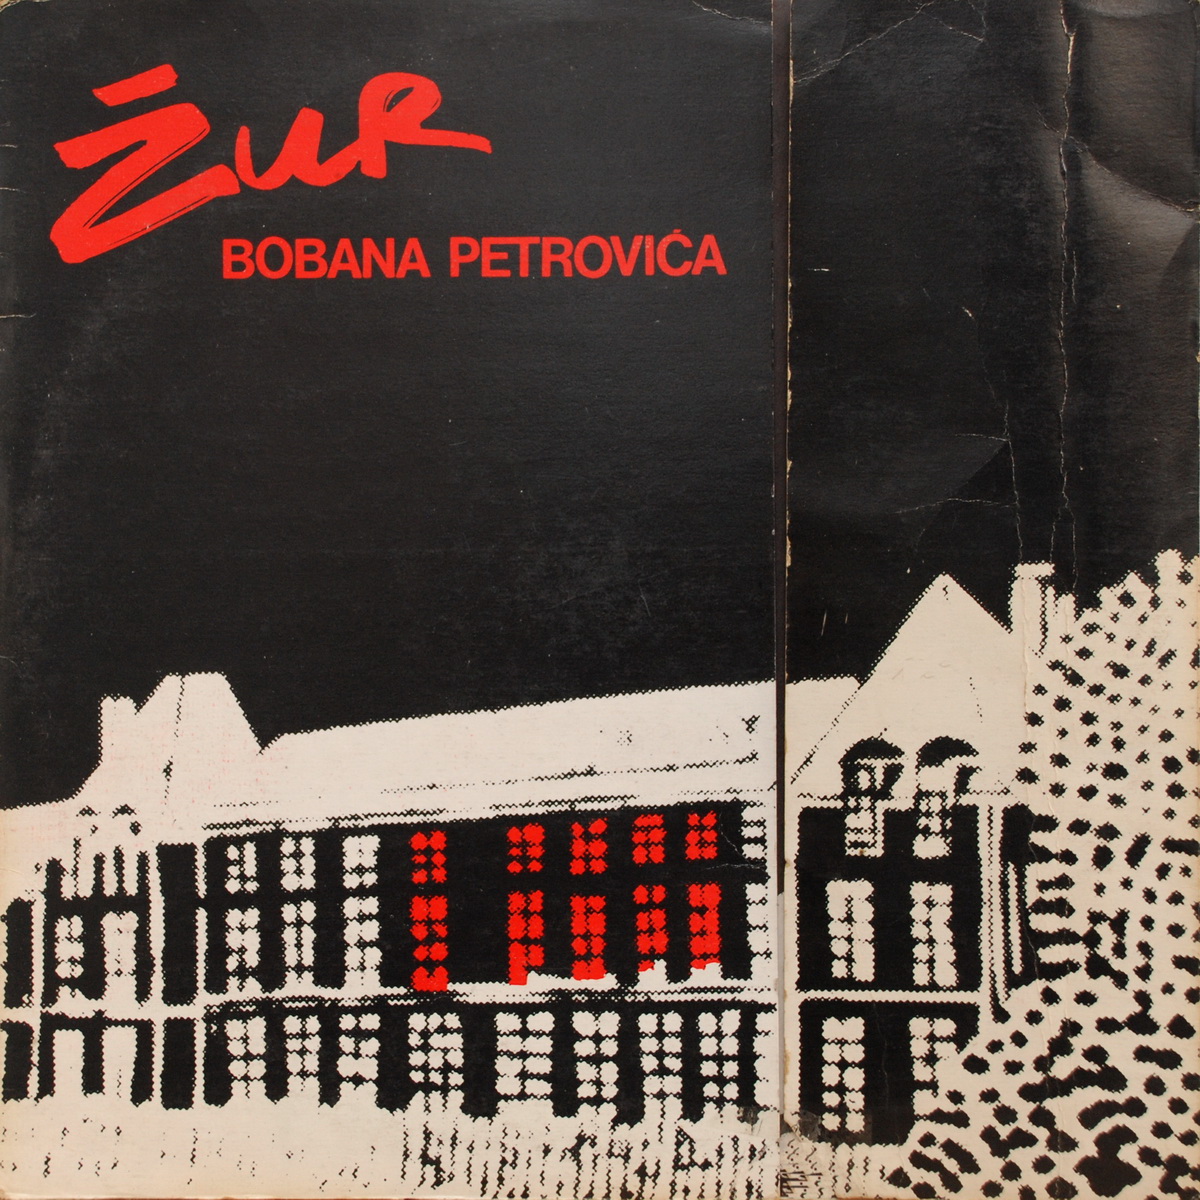 Boban Petrovic 1981 Zur a